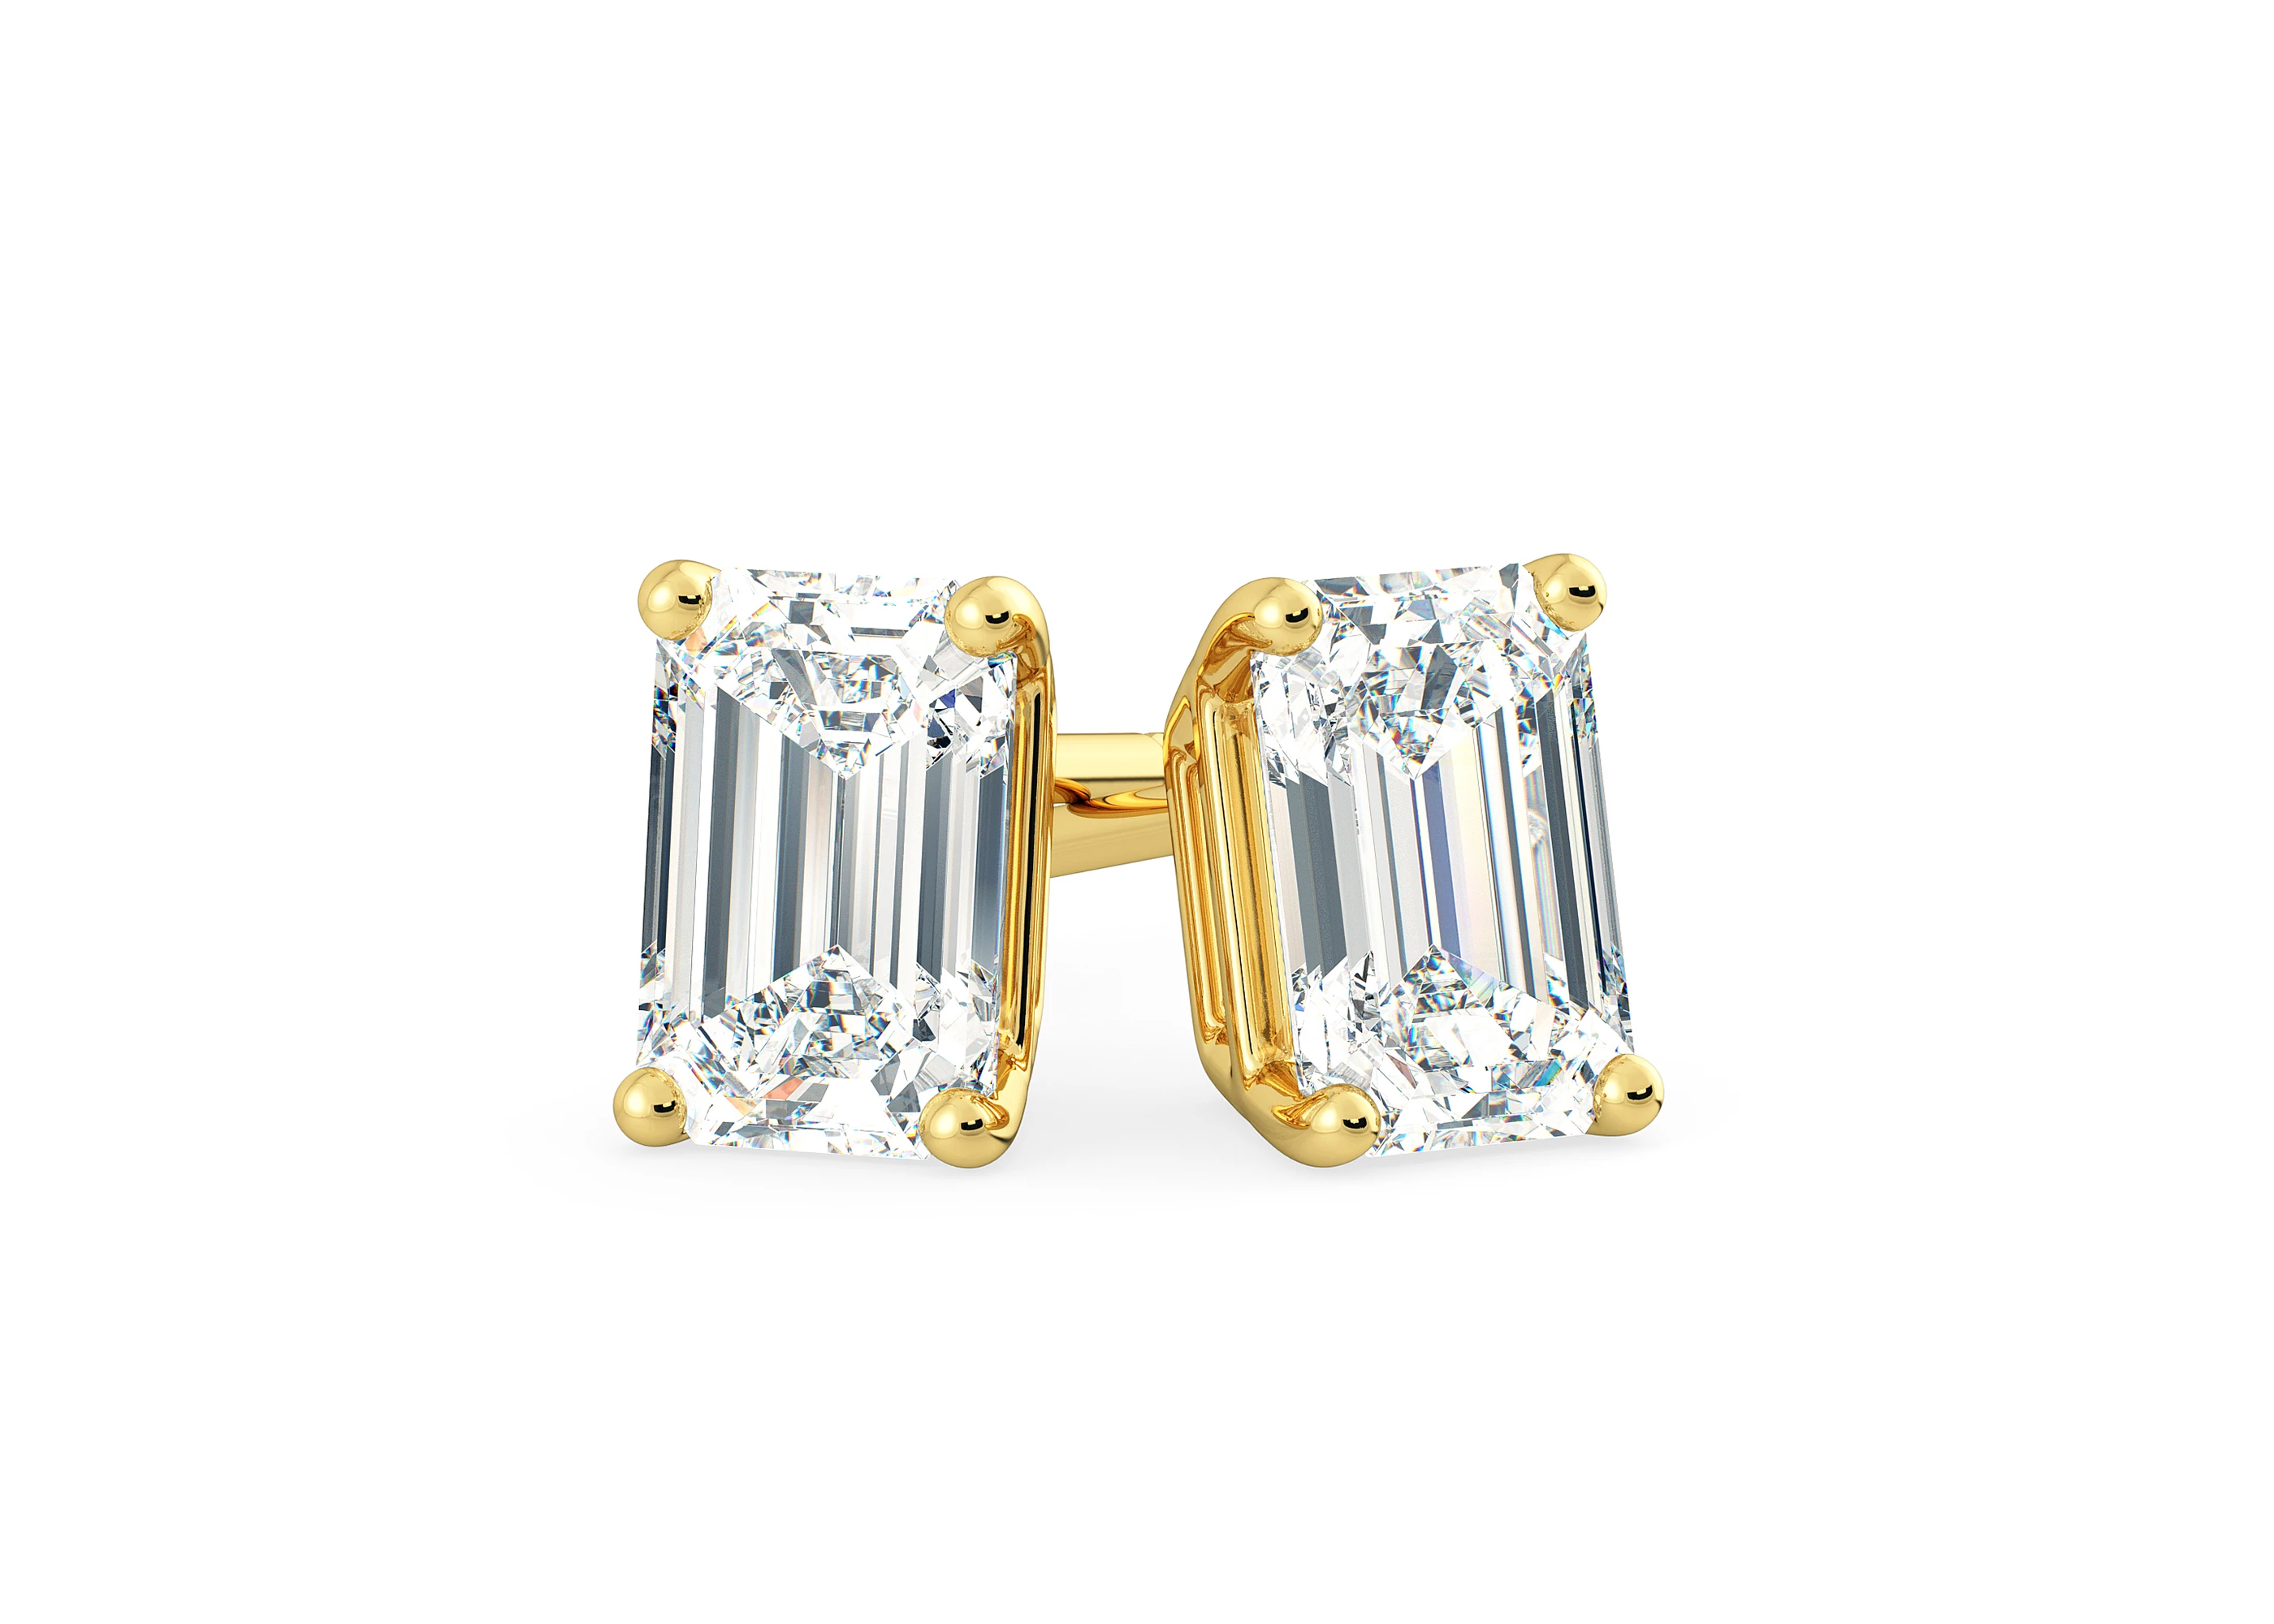 Ettore Emerald Diamond Stud Earrings in 18K Yellow Gold with Butterfly Backs